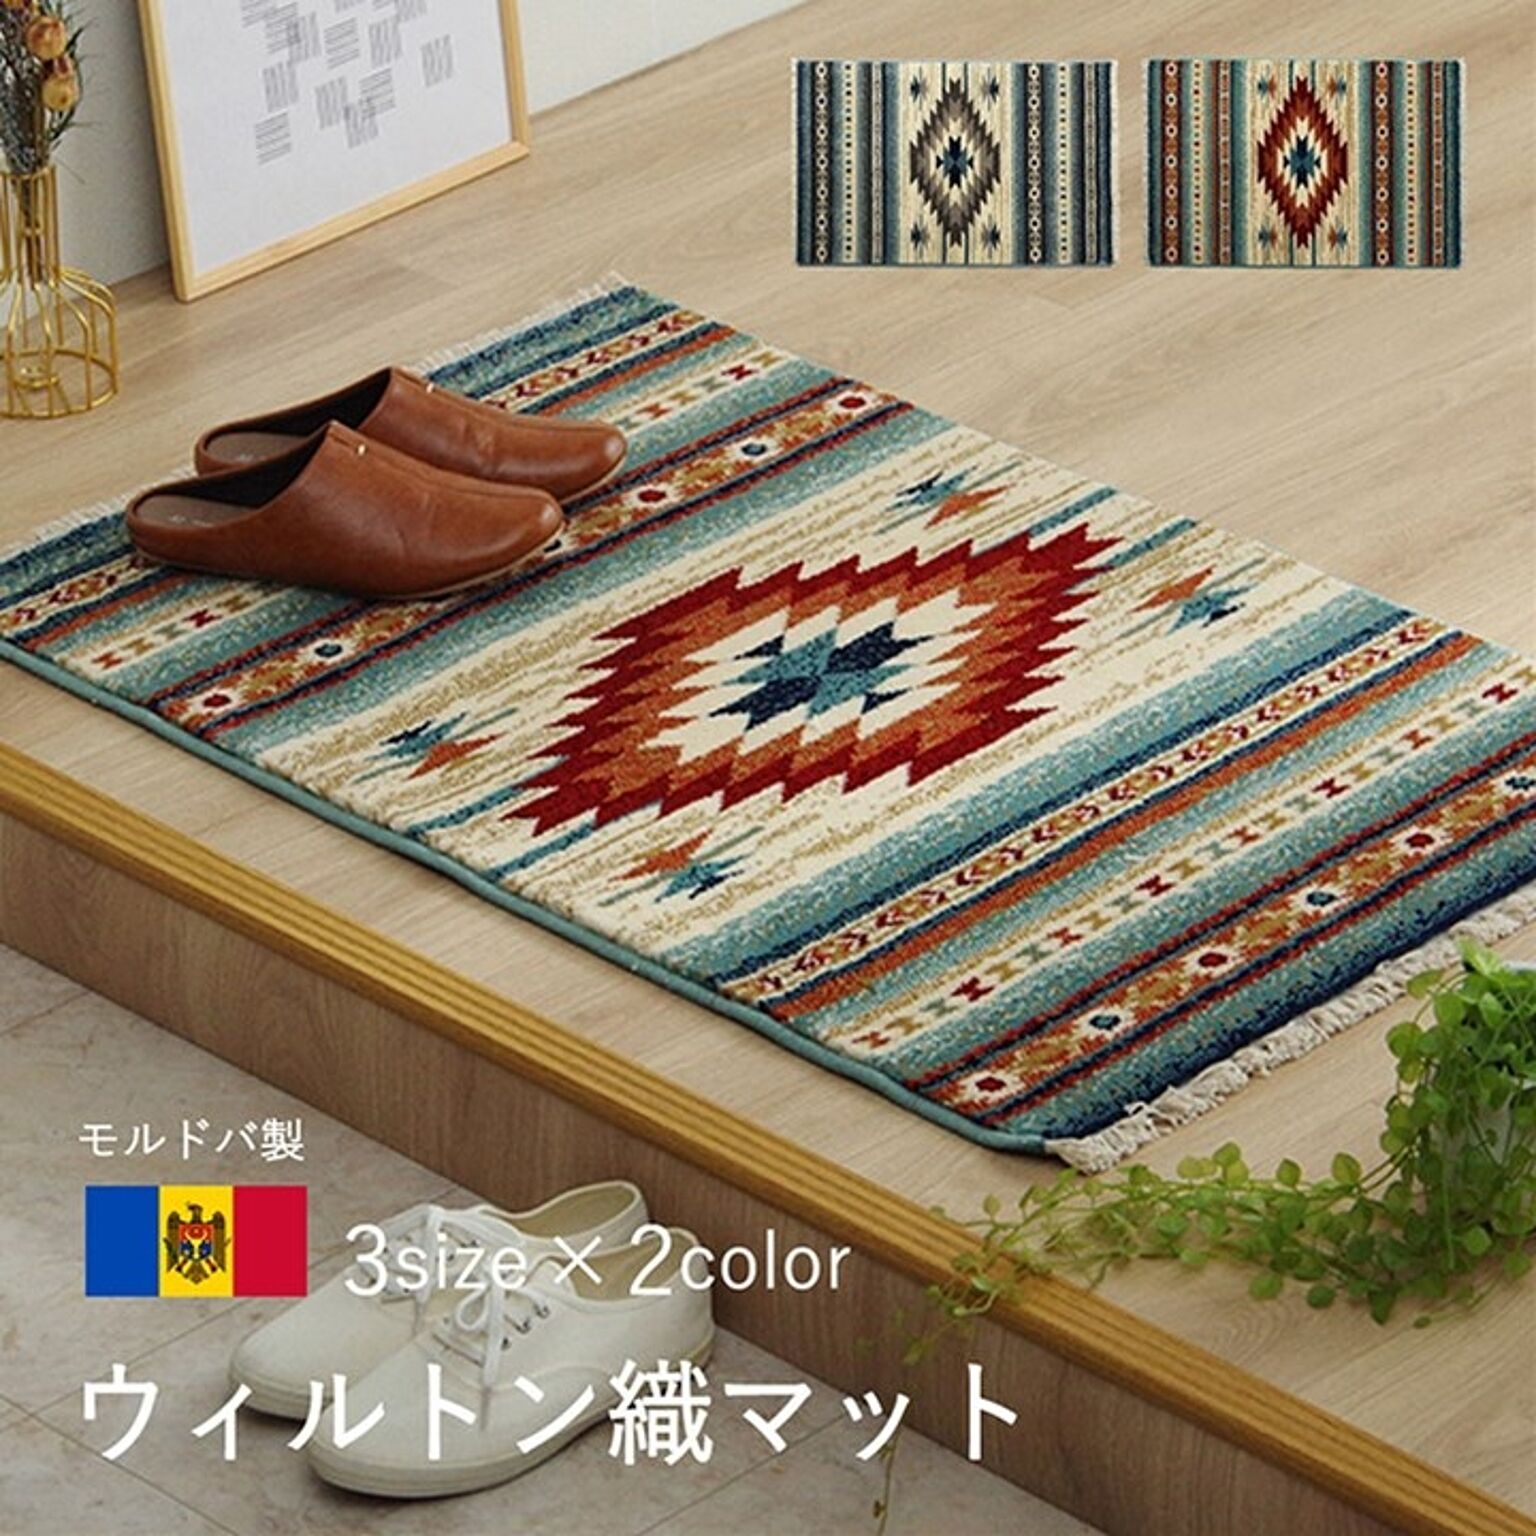 イケヒコ・コーポレーション ピオス ウィルトン織りマット レッド 50×80cm 2052939